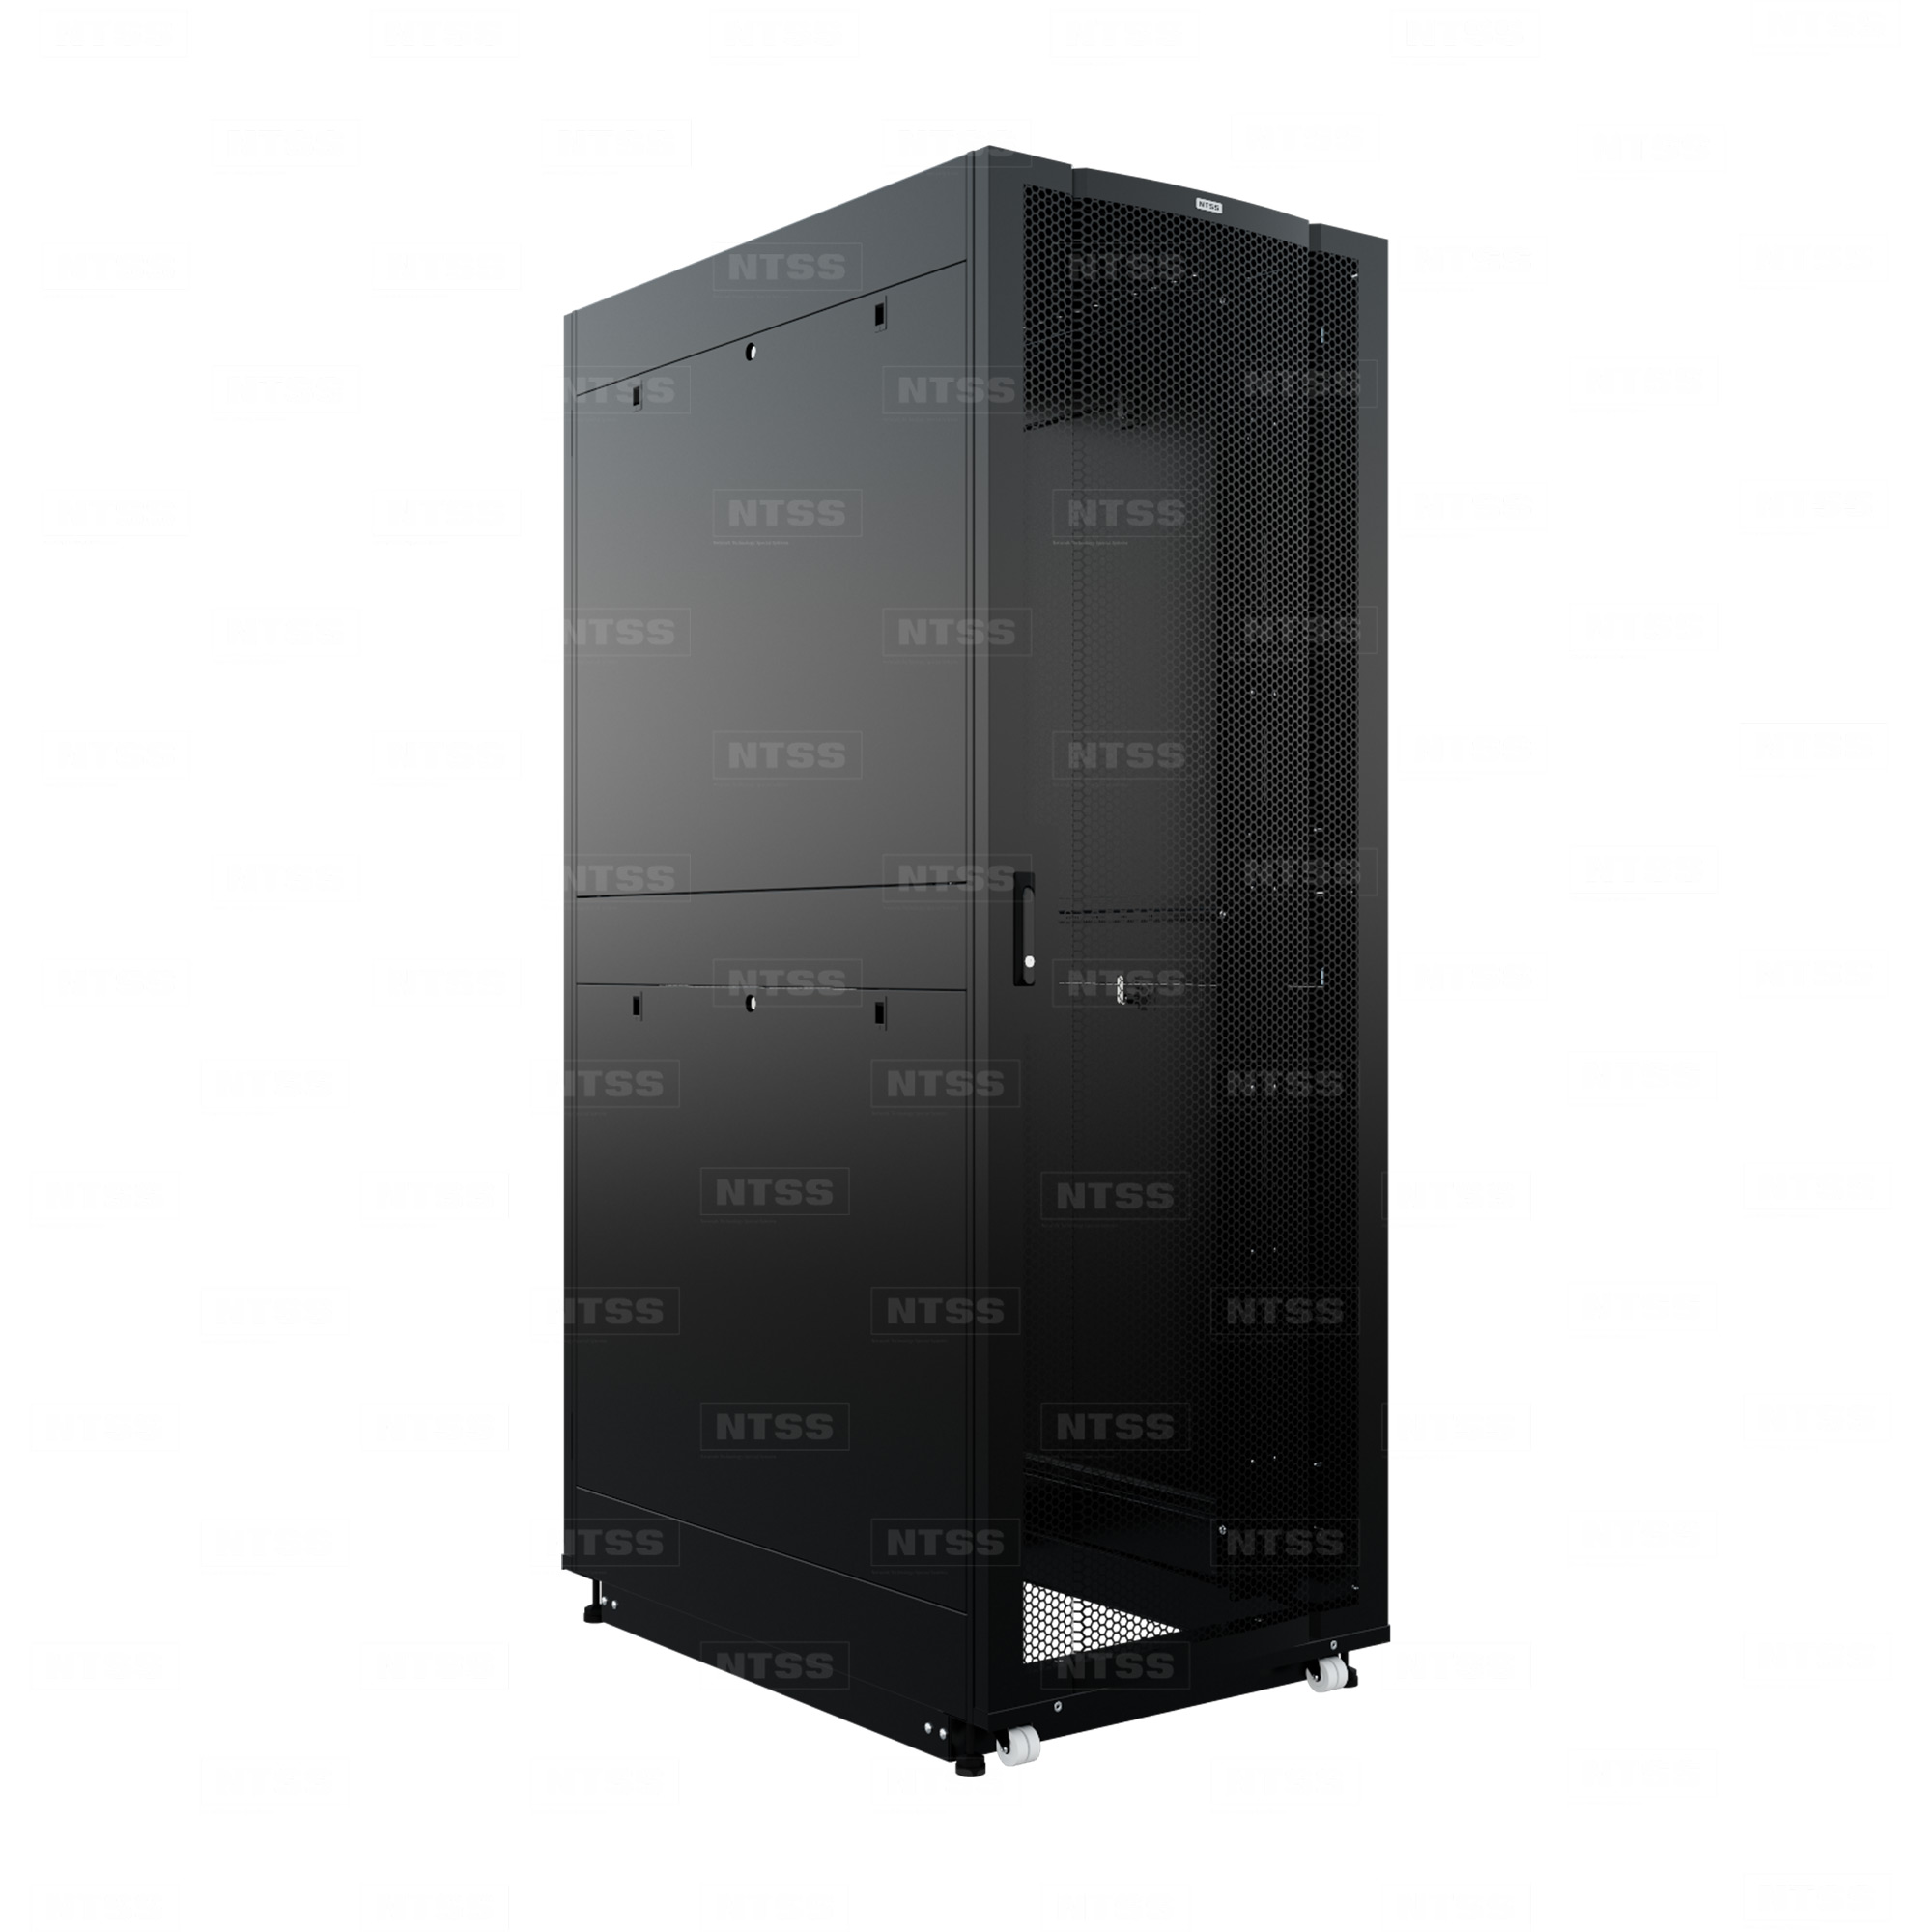 19" Напольный серверный шкаф NTSS ПРОЦОД PC МАСТЕР 47U 800х1200 мм, сварной в сборе, передняя дверь перфорация, задняя дверь распашная двойная перфорированная, боковые стенки, регулируемые опоры, ролики, черный RAL 9005